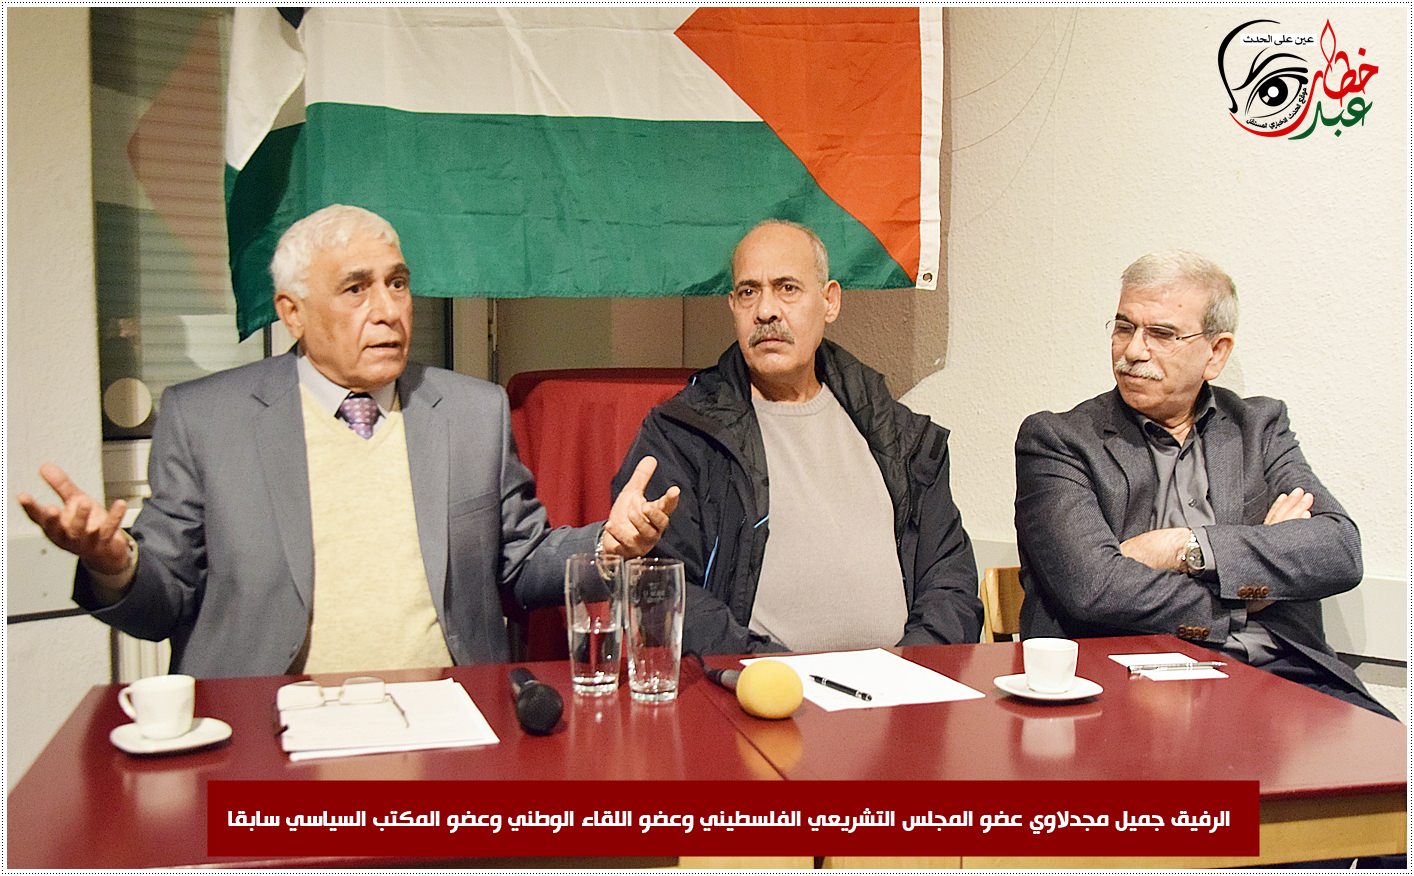 النائب جميل المجدلاوي في ندوة سياسة بدعوة من لجان فلسطين الديمقراطية